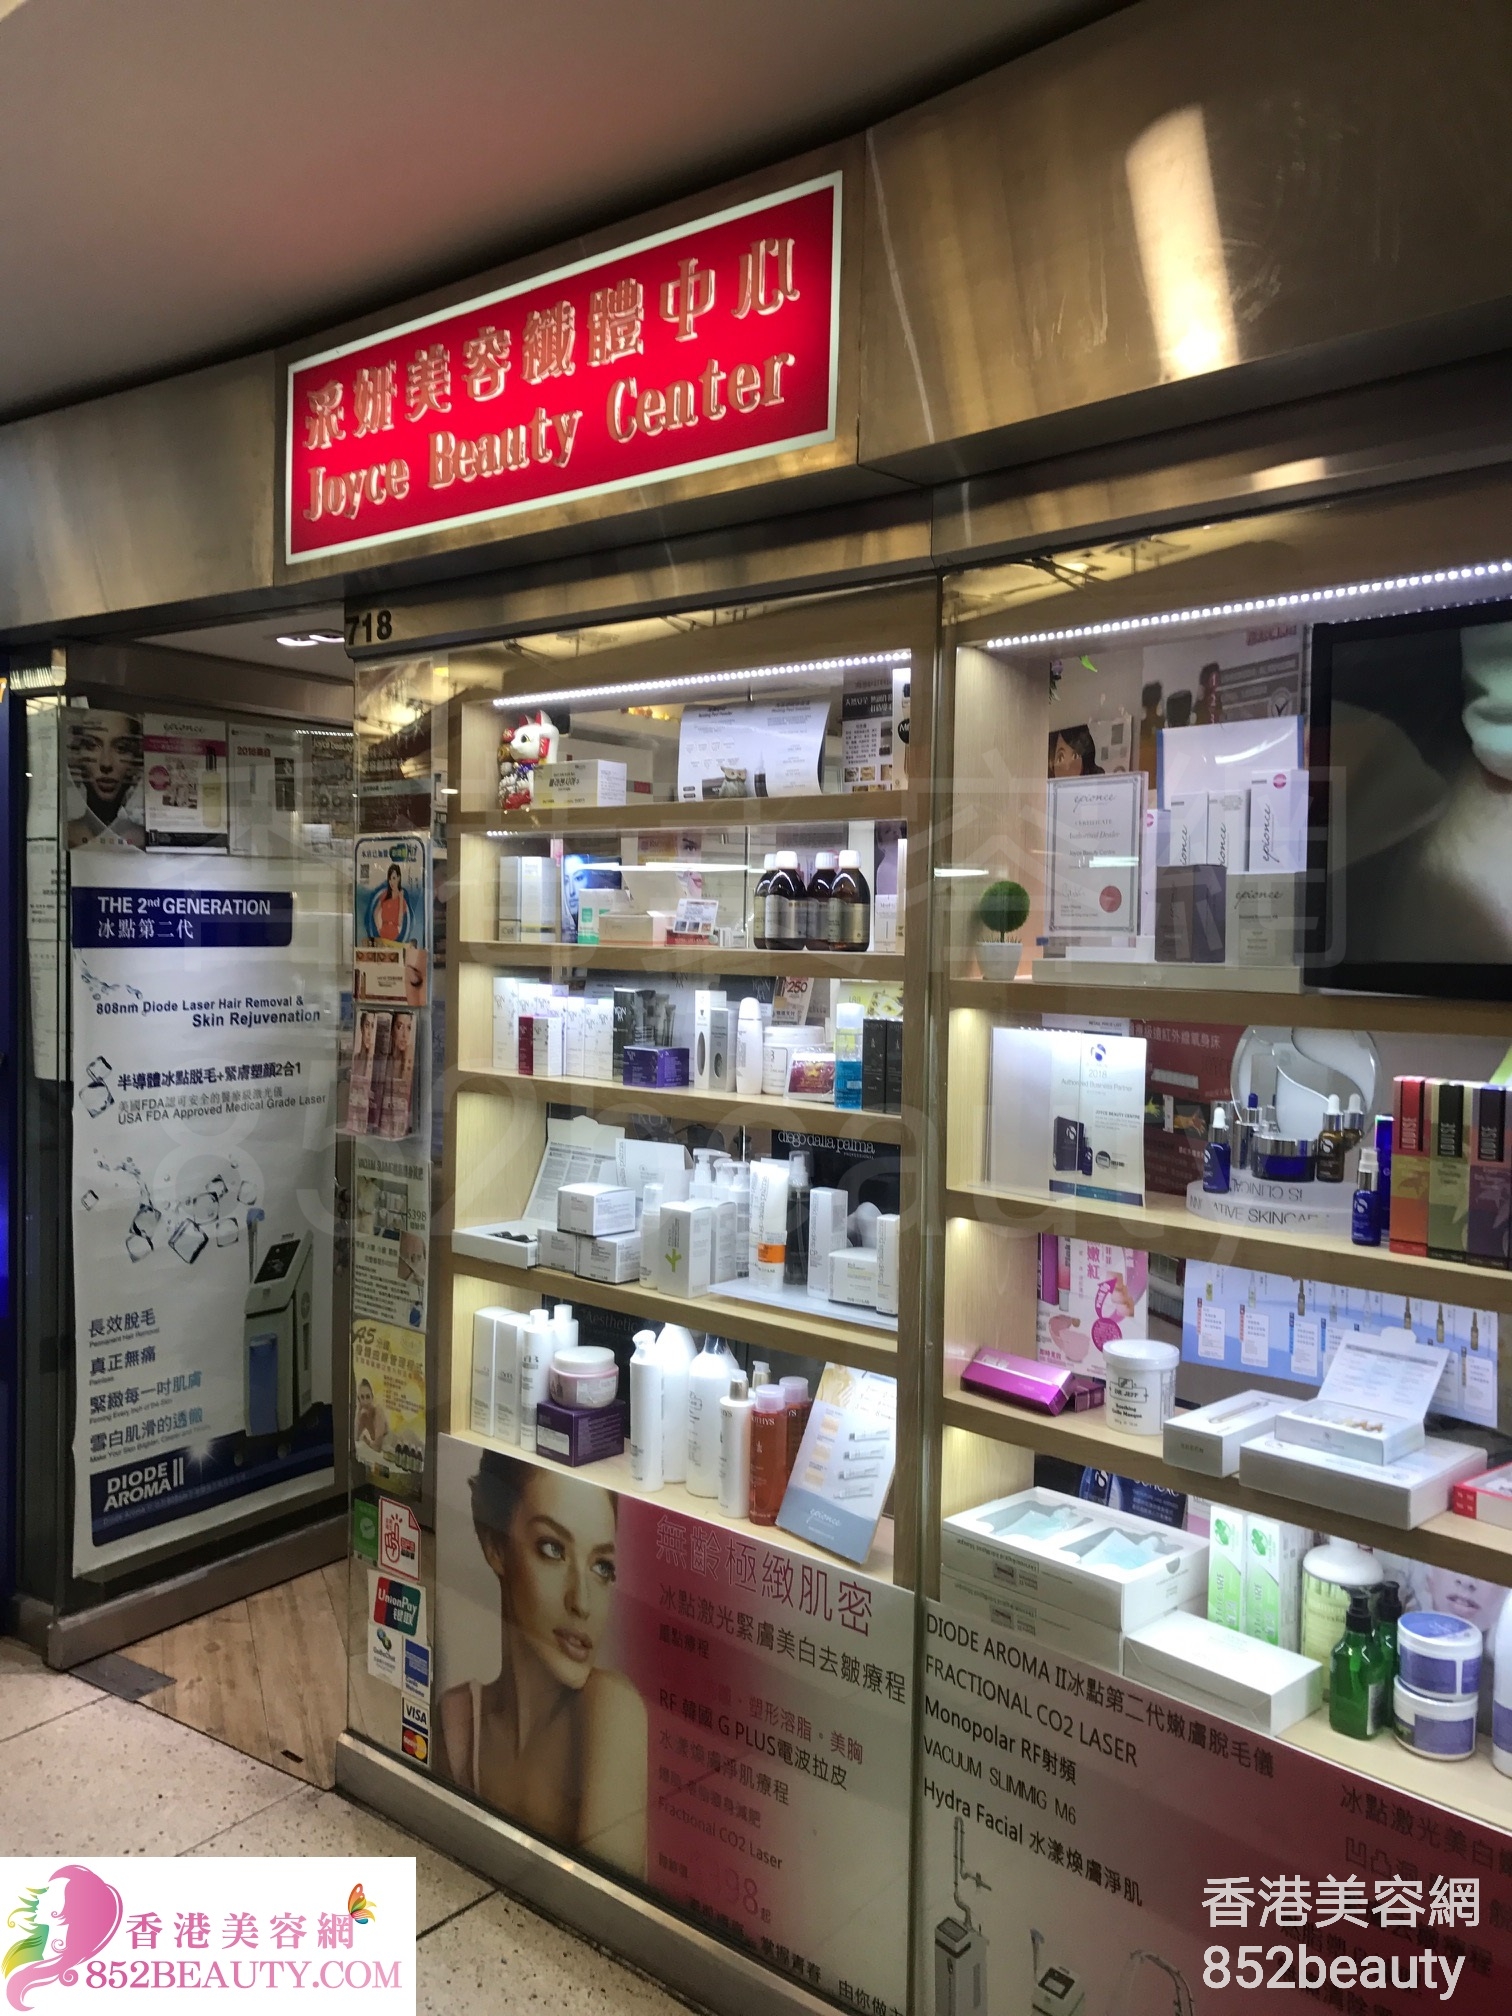 纤体瘦身: 采妍美容纖體中心 Joyce Beauty Center (西九龍中心)